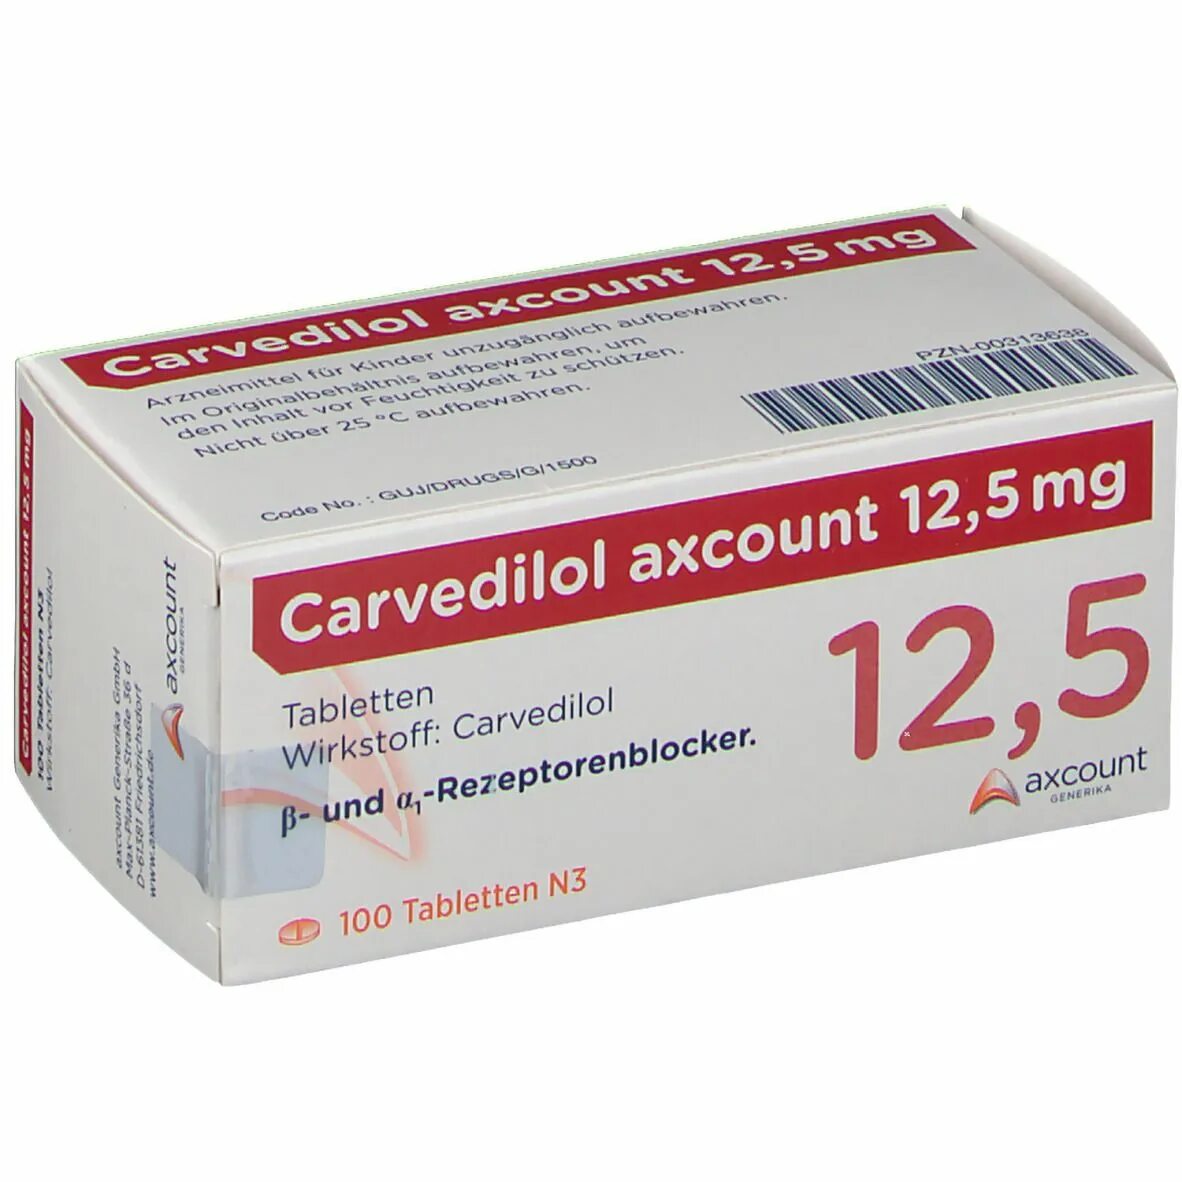 Статинориз отзывы пациентов. Карведилол 12.5 мг. Карведилол Тева 12.5. Карведилол 6.125. Карведилол форма выпуска.